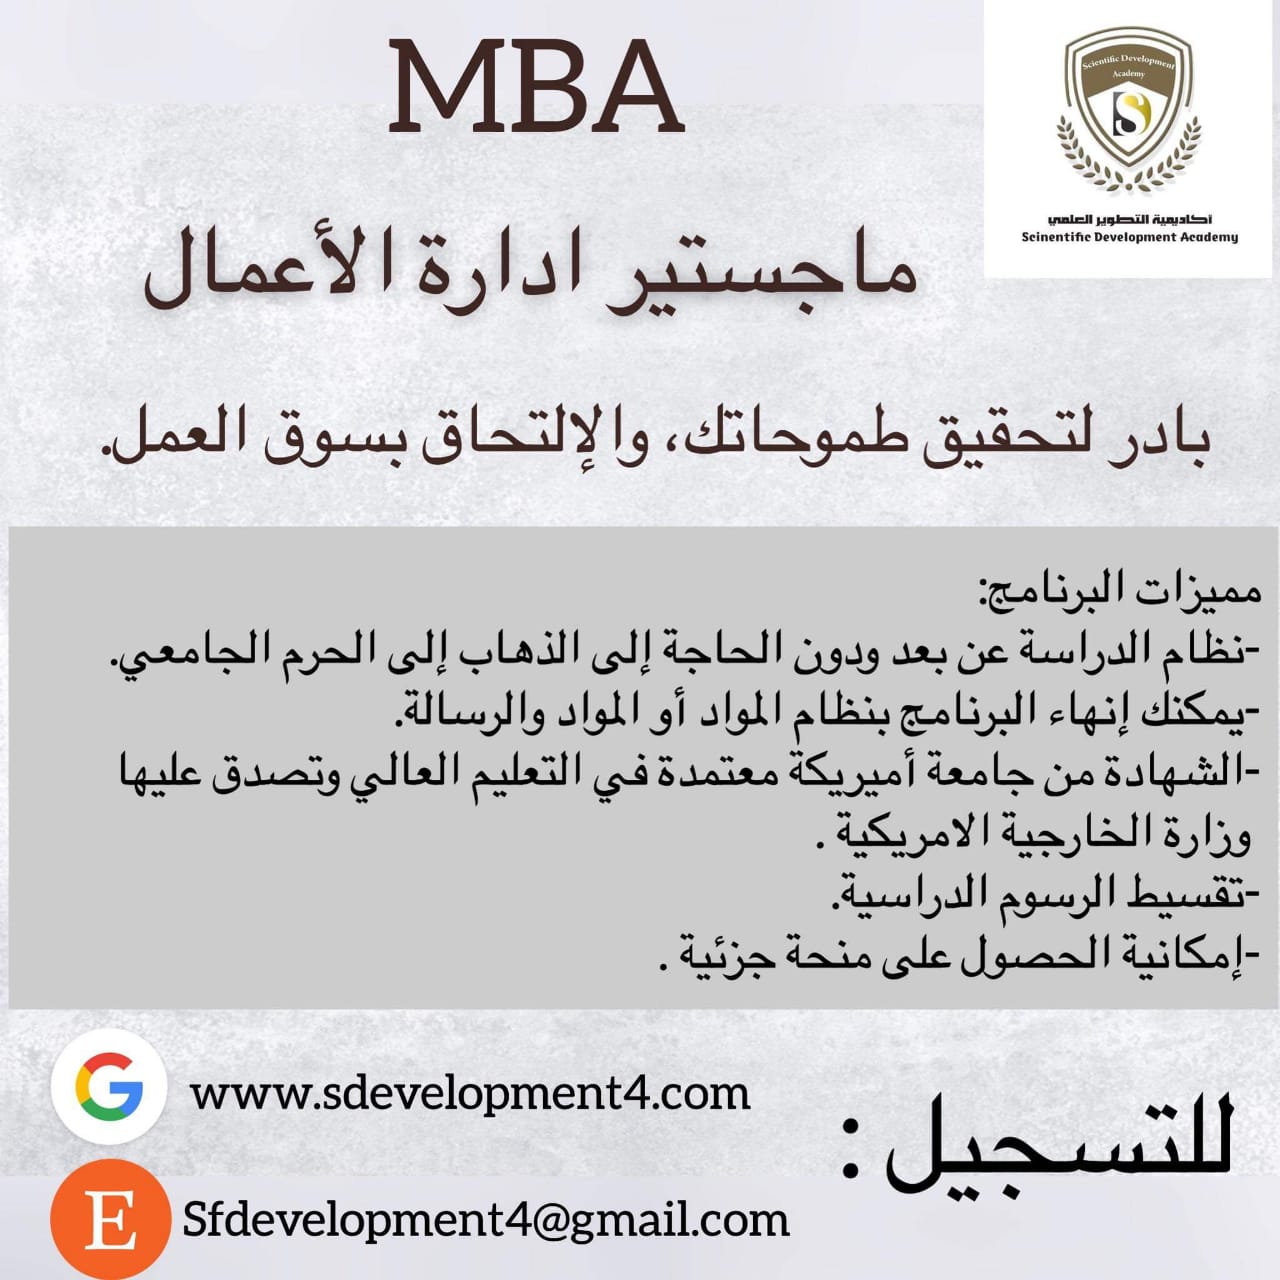 ماجستير ادارة الأعمال MBA  الآااااان ...... أكاديمية التطوير العلمي تقدم لكم ماجستير ادارة الاعمال MBA.  بادر لتحقيق طموحاتك، والإلتحاق بسوق العمل.